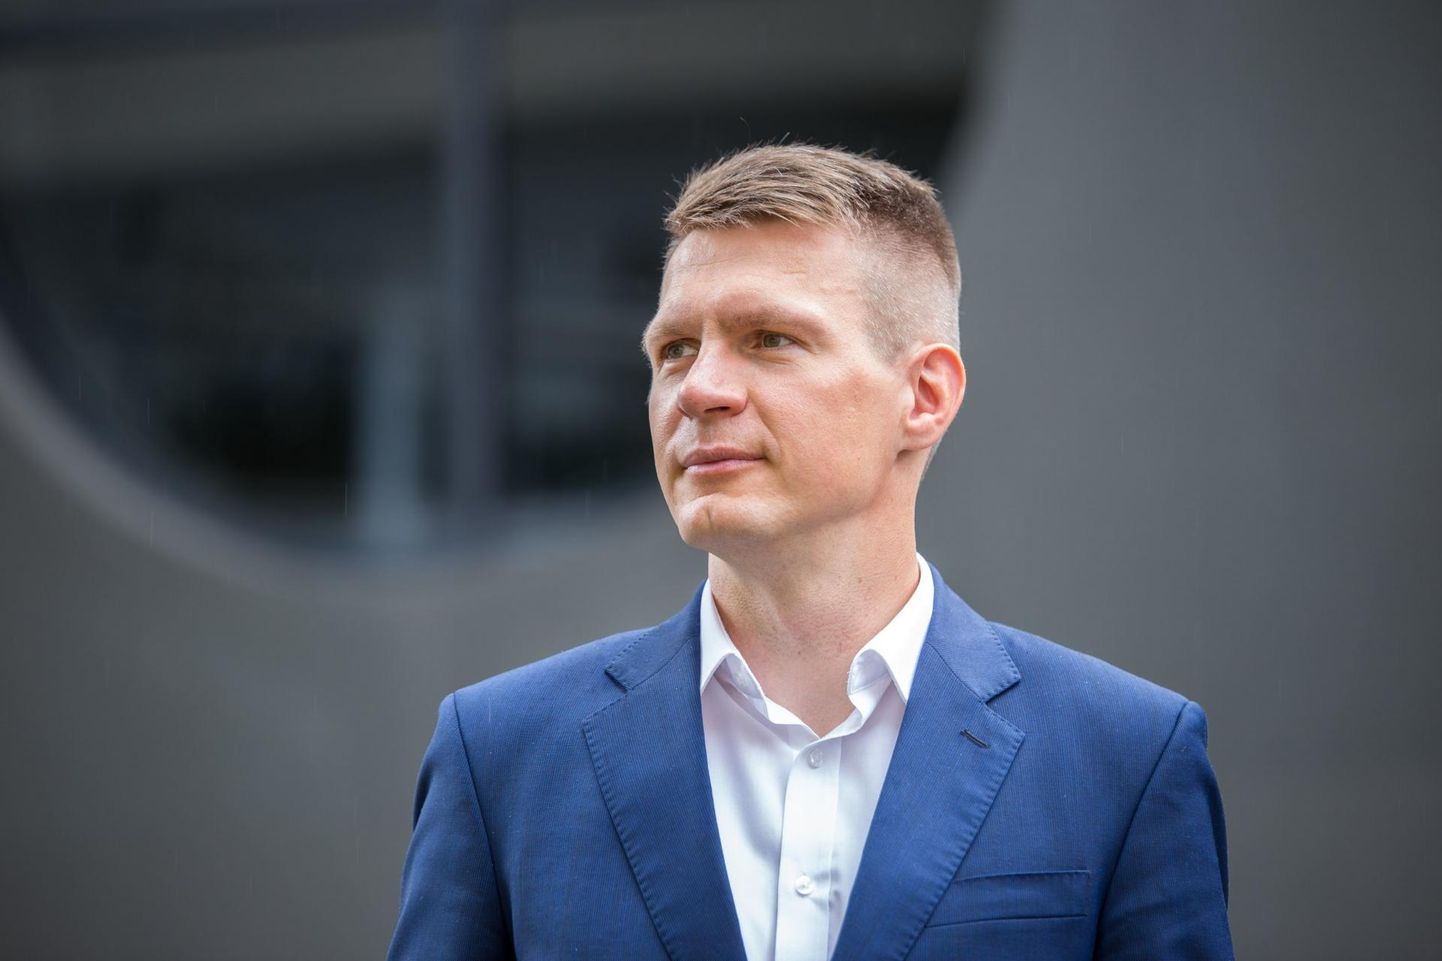 Suurenenud investeeringud ja müügikäive on Eesti ettevõtted taas aktiivsemalt laenama pannud, kirjutas Eesti Panga ökonomist Taavi Raudsaar.